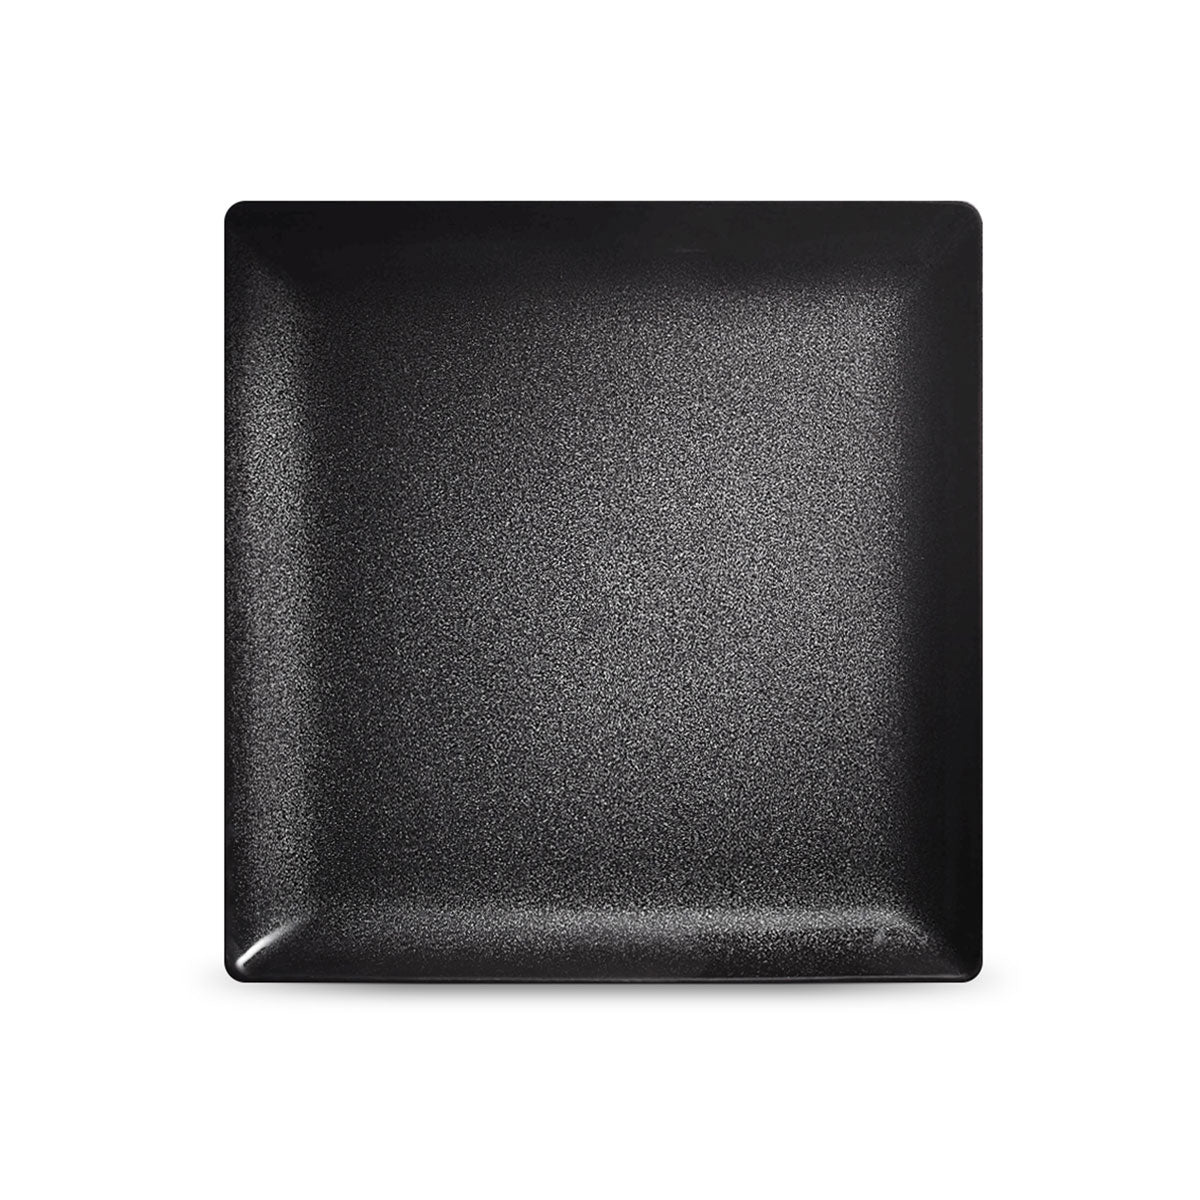 NOIR PAILLETÉ - Square plate 24 cm